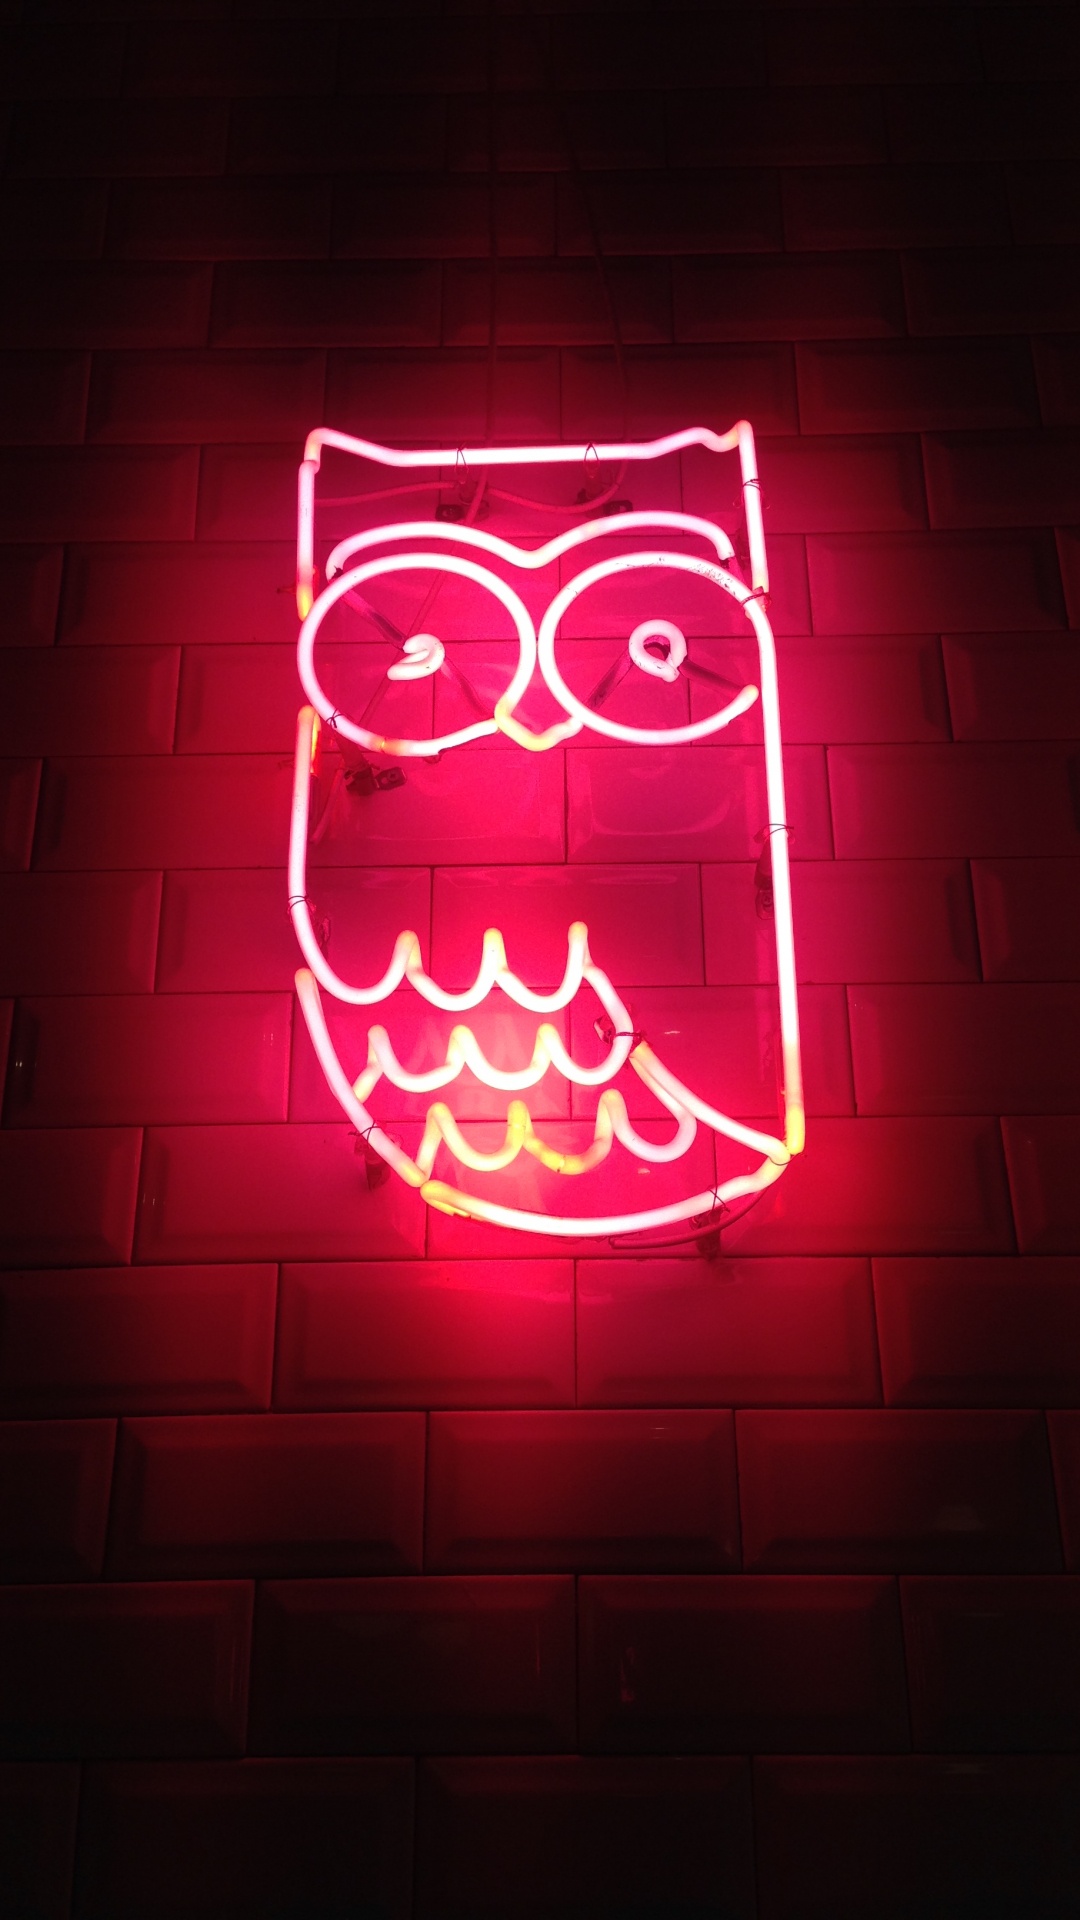 Aesthetic Neon Owl, Owls, Neon, Neon Lighting, Light. Wallpaper in 1080x1920 Resolution